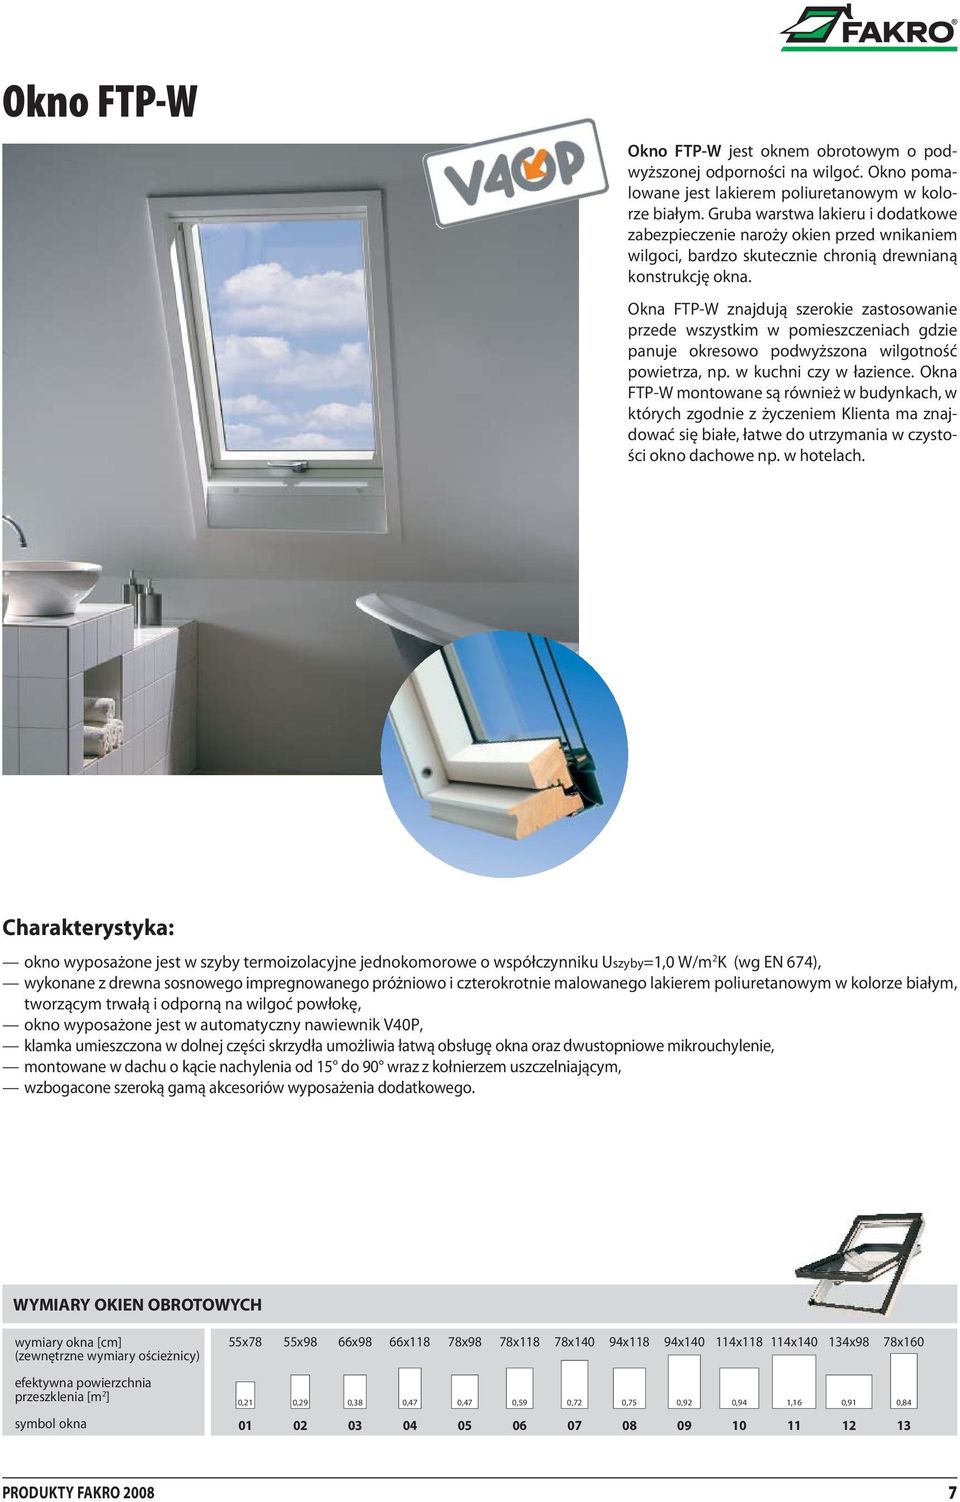 Okna FTP-W znajdują szerokie zastosowanie przede wszystkim w pomieszczeniach gdzie panuje okresowo podwyższona wilgotność powietrza, np. w kuchni czy w łazience.